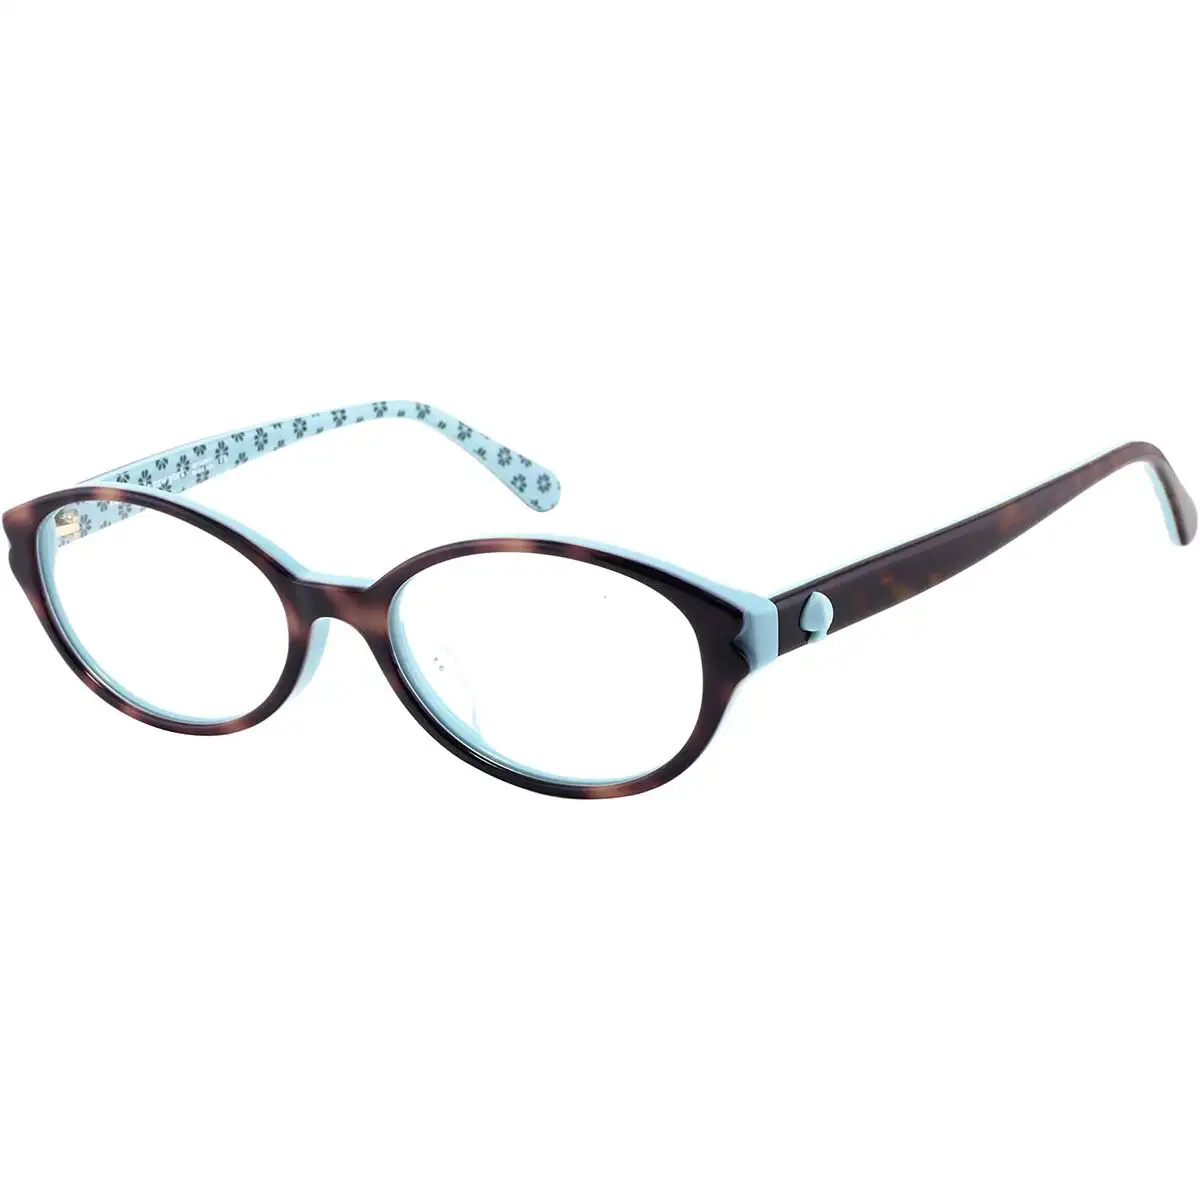 Monture de lunettes femme kate spade brisbane_f_4419. DIAYTAR SENEGAL - Votre Passage vers l'Éclat et la Beauté. Explorez notre boutique en ligne et trouvez des produits qui subliment votre apparence et votre espace.